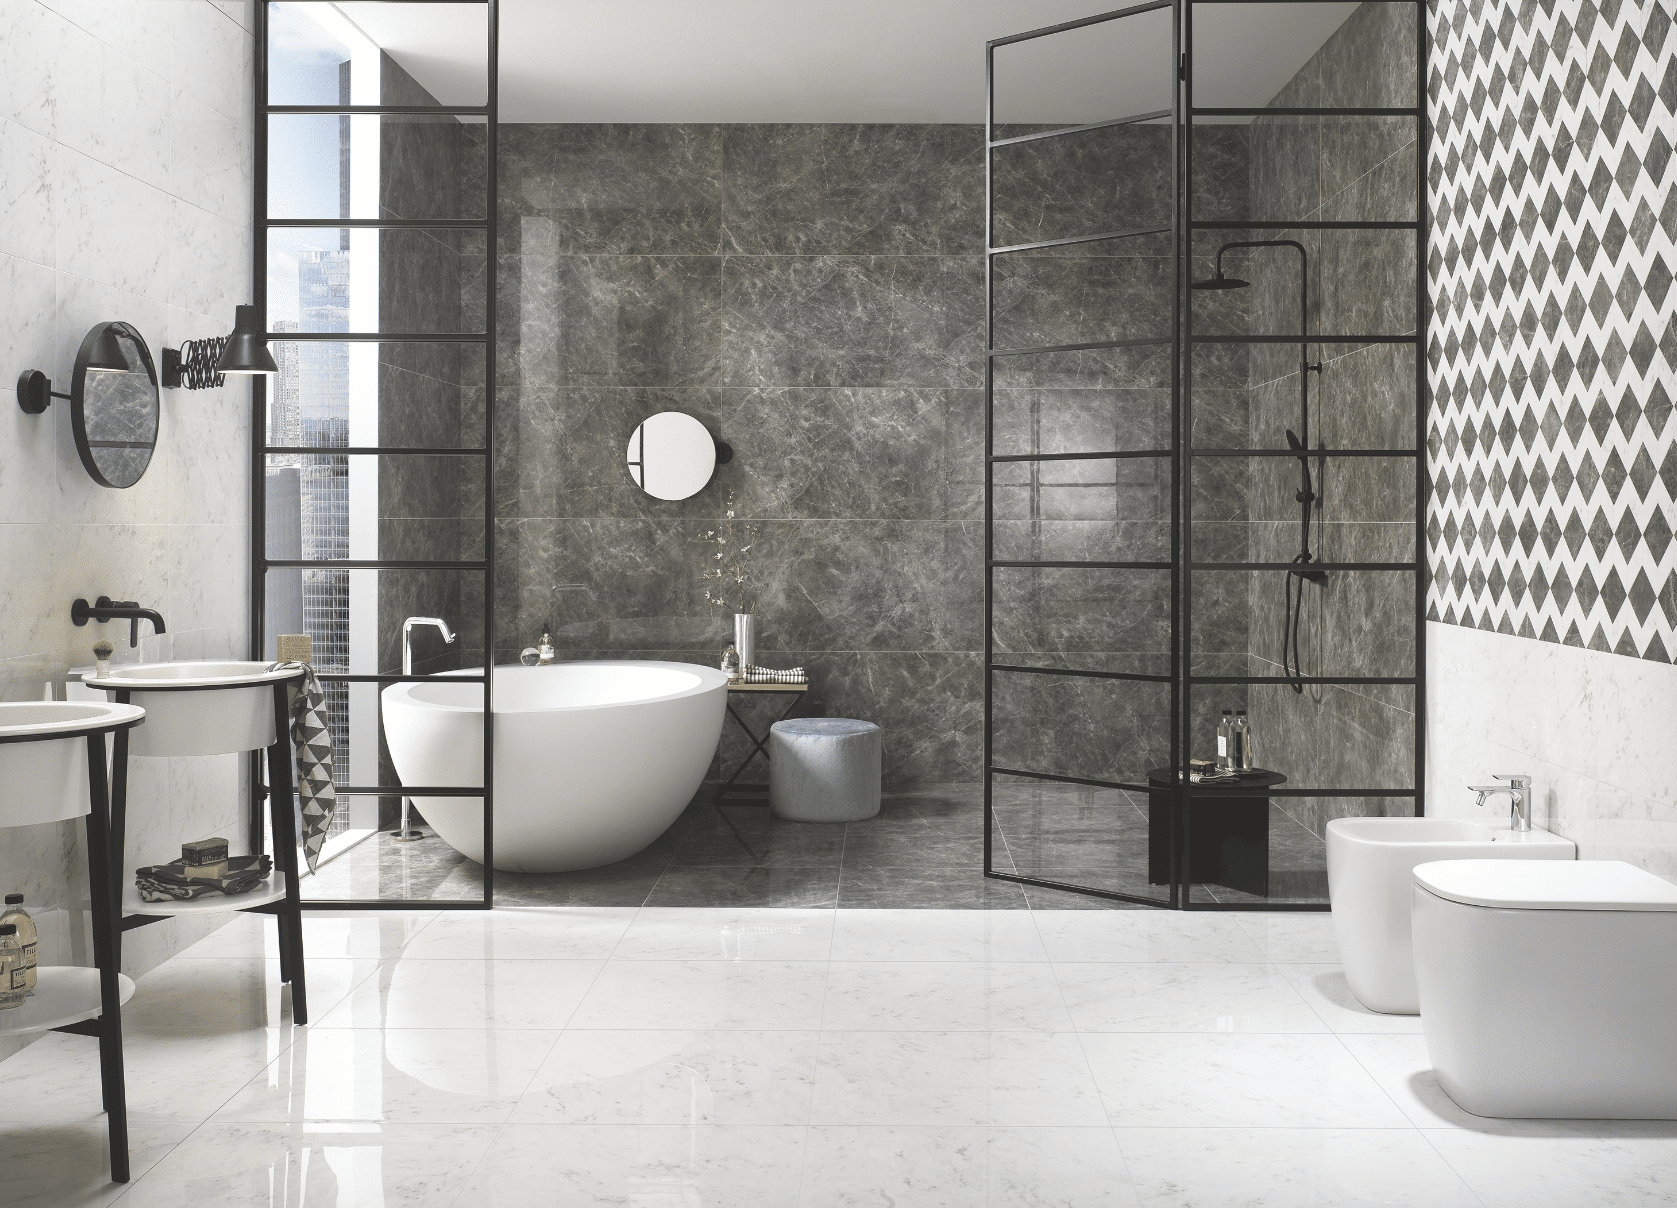 Fliesendorf zeigt ein sehr modernes Badezimmer in schwarz weiß mit Lofttüren, freistehender Badewanne, Doppelwaschtisch und Toilette.